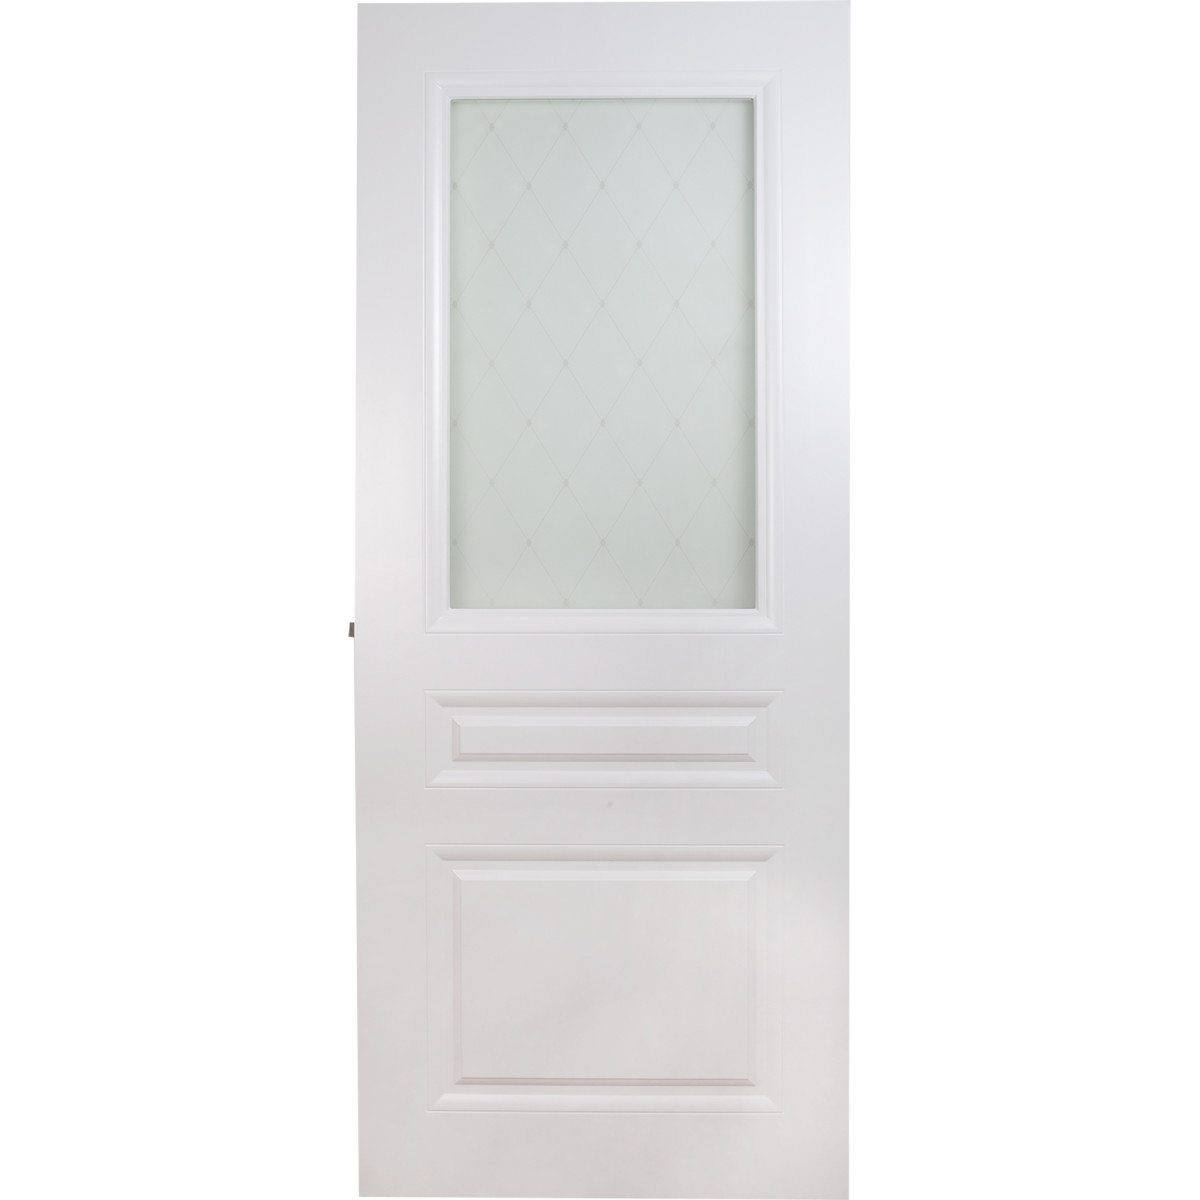 Дверь межкомнатная остеклённая Стелла, 70x200 см, эмаль, цвет белый